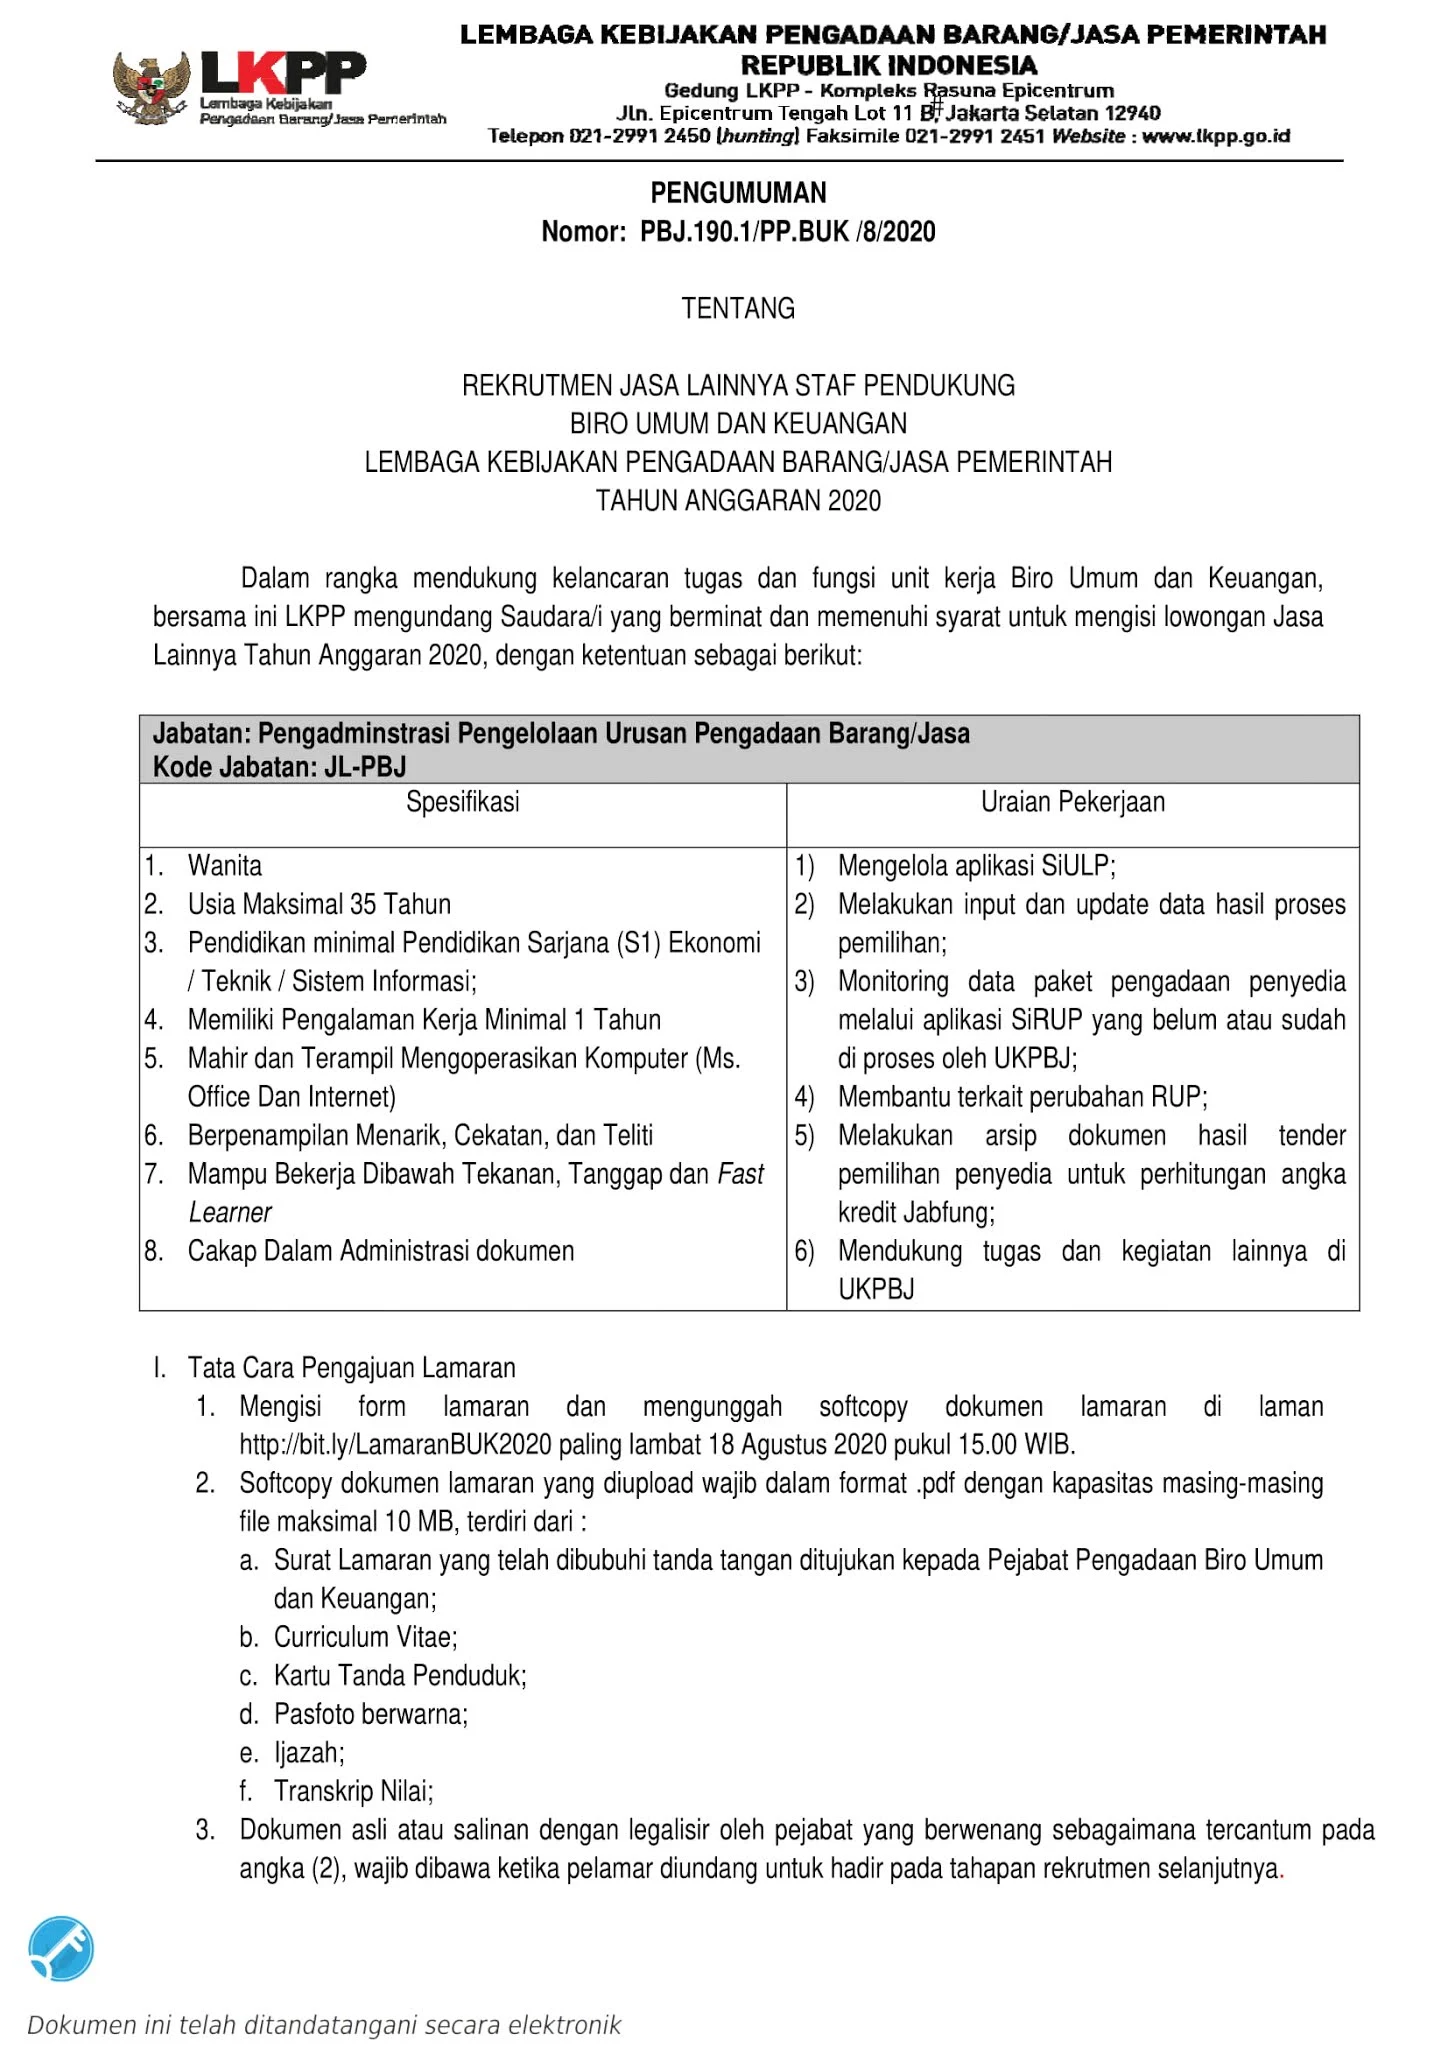 Lowongan Kerja Lembaga Kebijakan Pengadaan Barang Jasa Pemerintah Republik Indonesia Agustus 2020